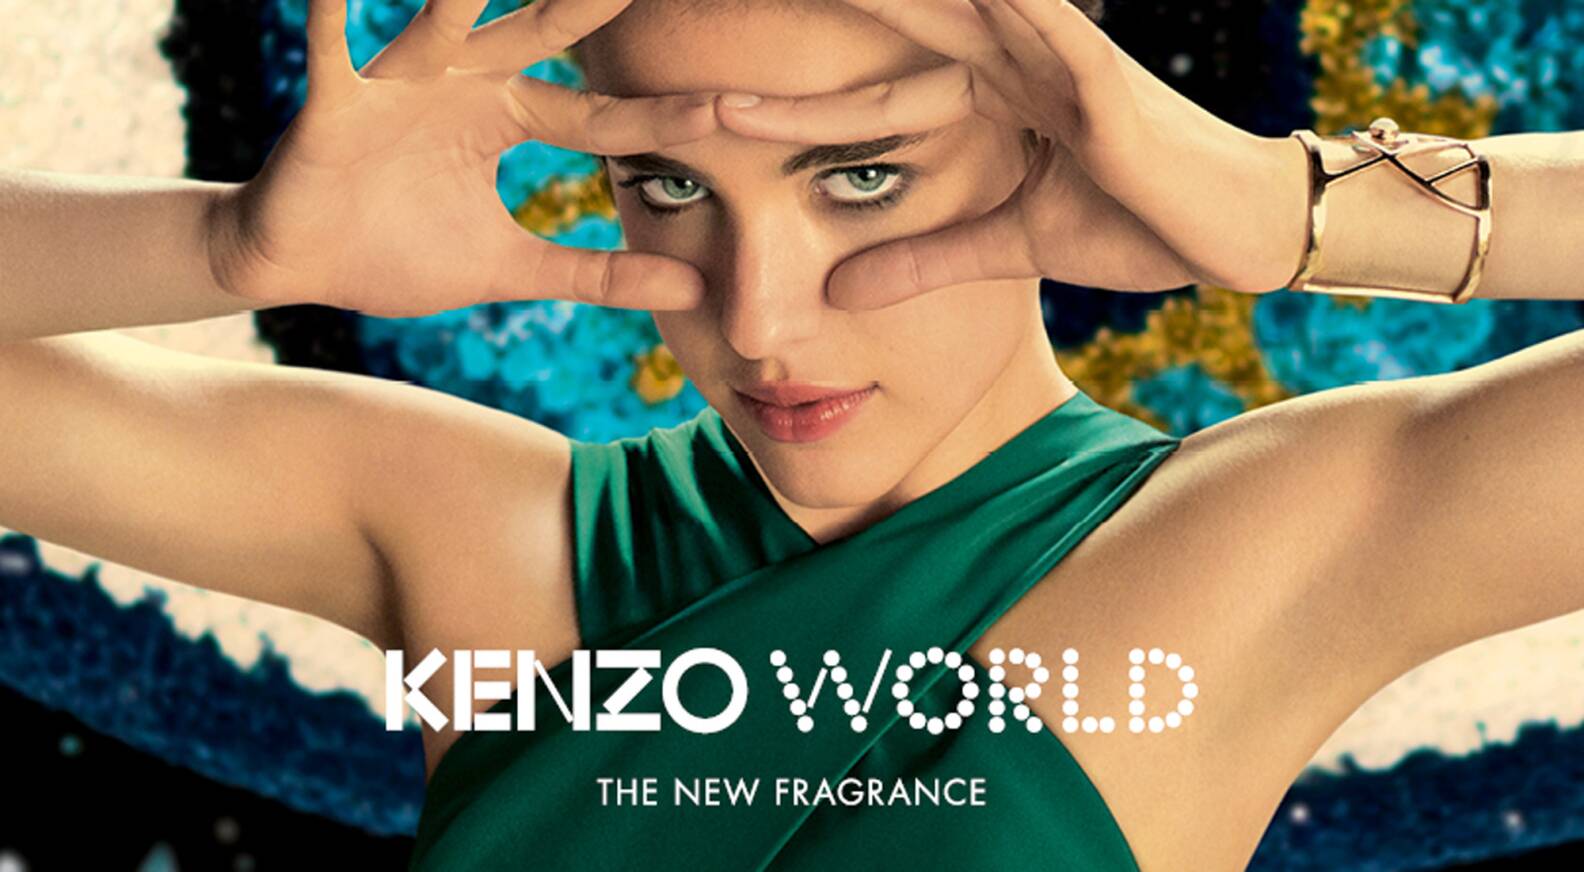 kenzo new perfume 2018